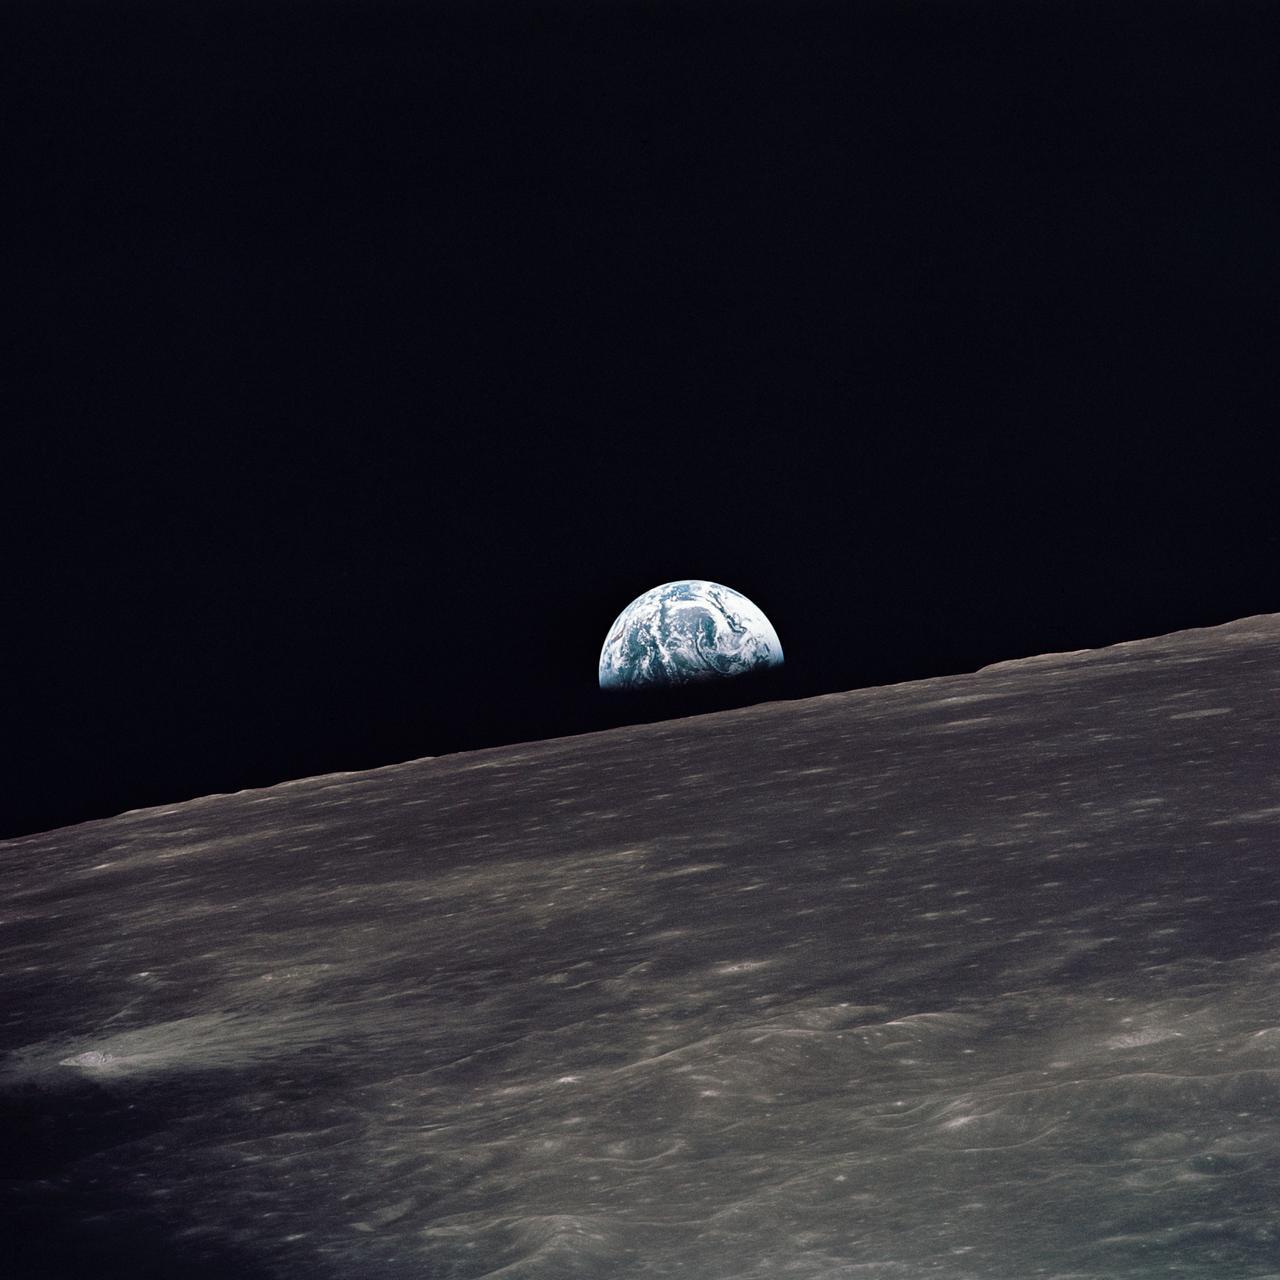 Una vista della Terra che sorge sopra l'orizzonte lunare fotografata dal Modulo Lunare Apollo 10, guardando verso ovest nella direzione del viaggio. Il Modulo Lunare al momento in cui è stata scattata la foto si trovava sopra le alte terre del lato lontano della Luna a circa 105 gradi di longitudine est.